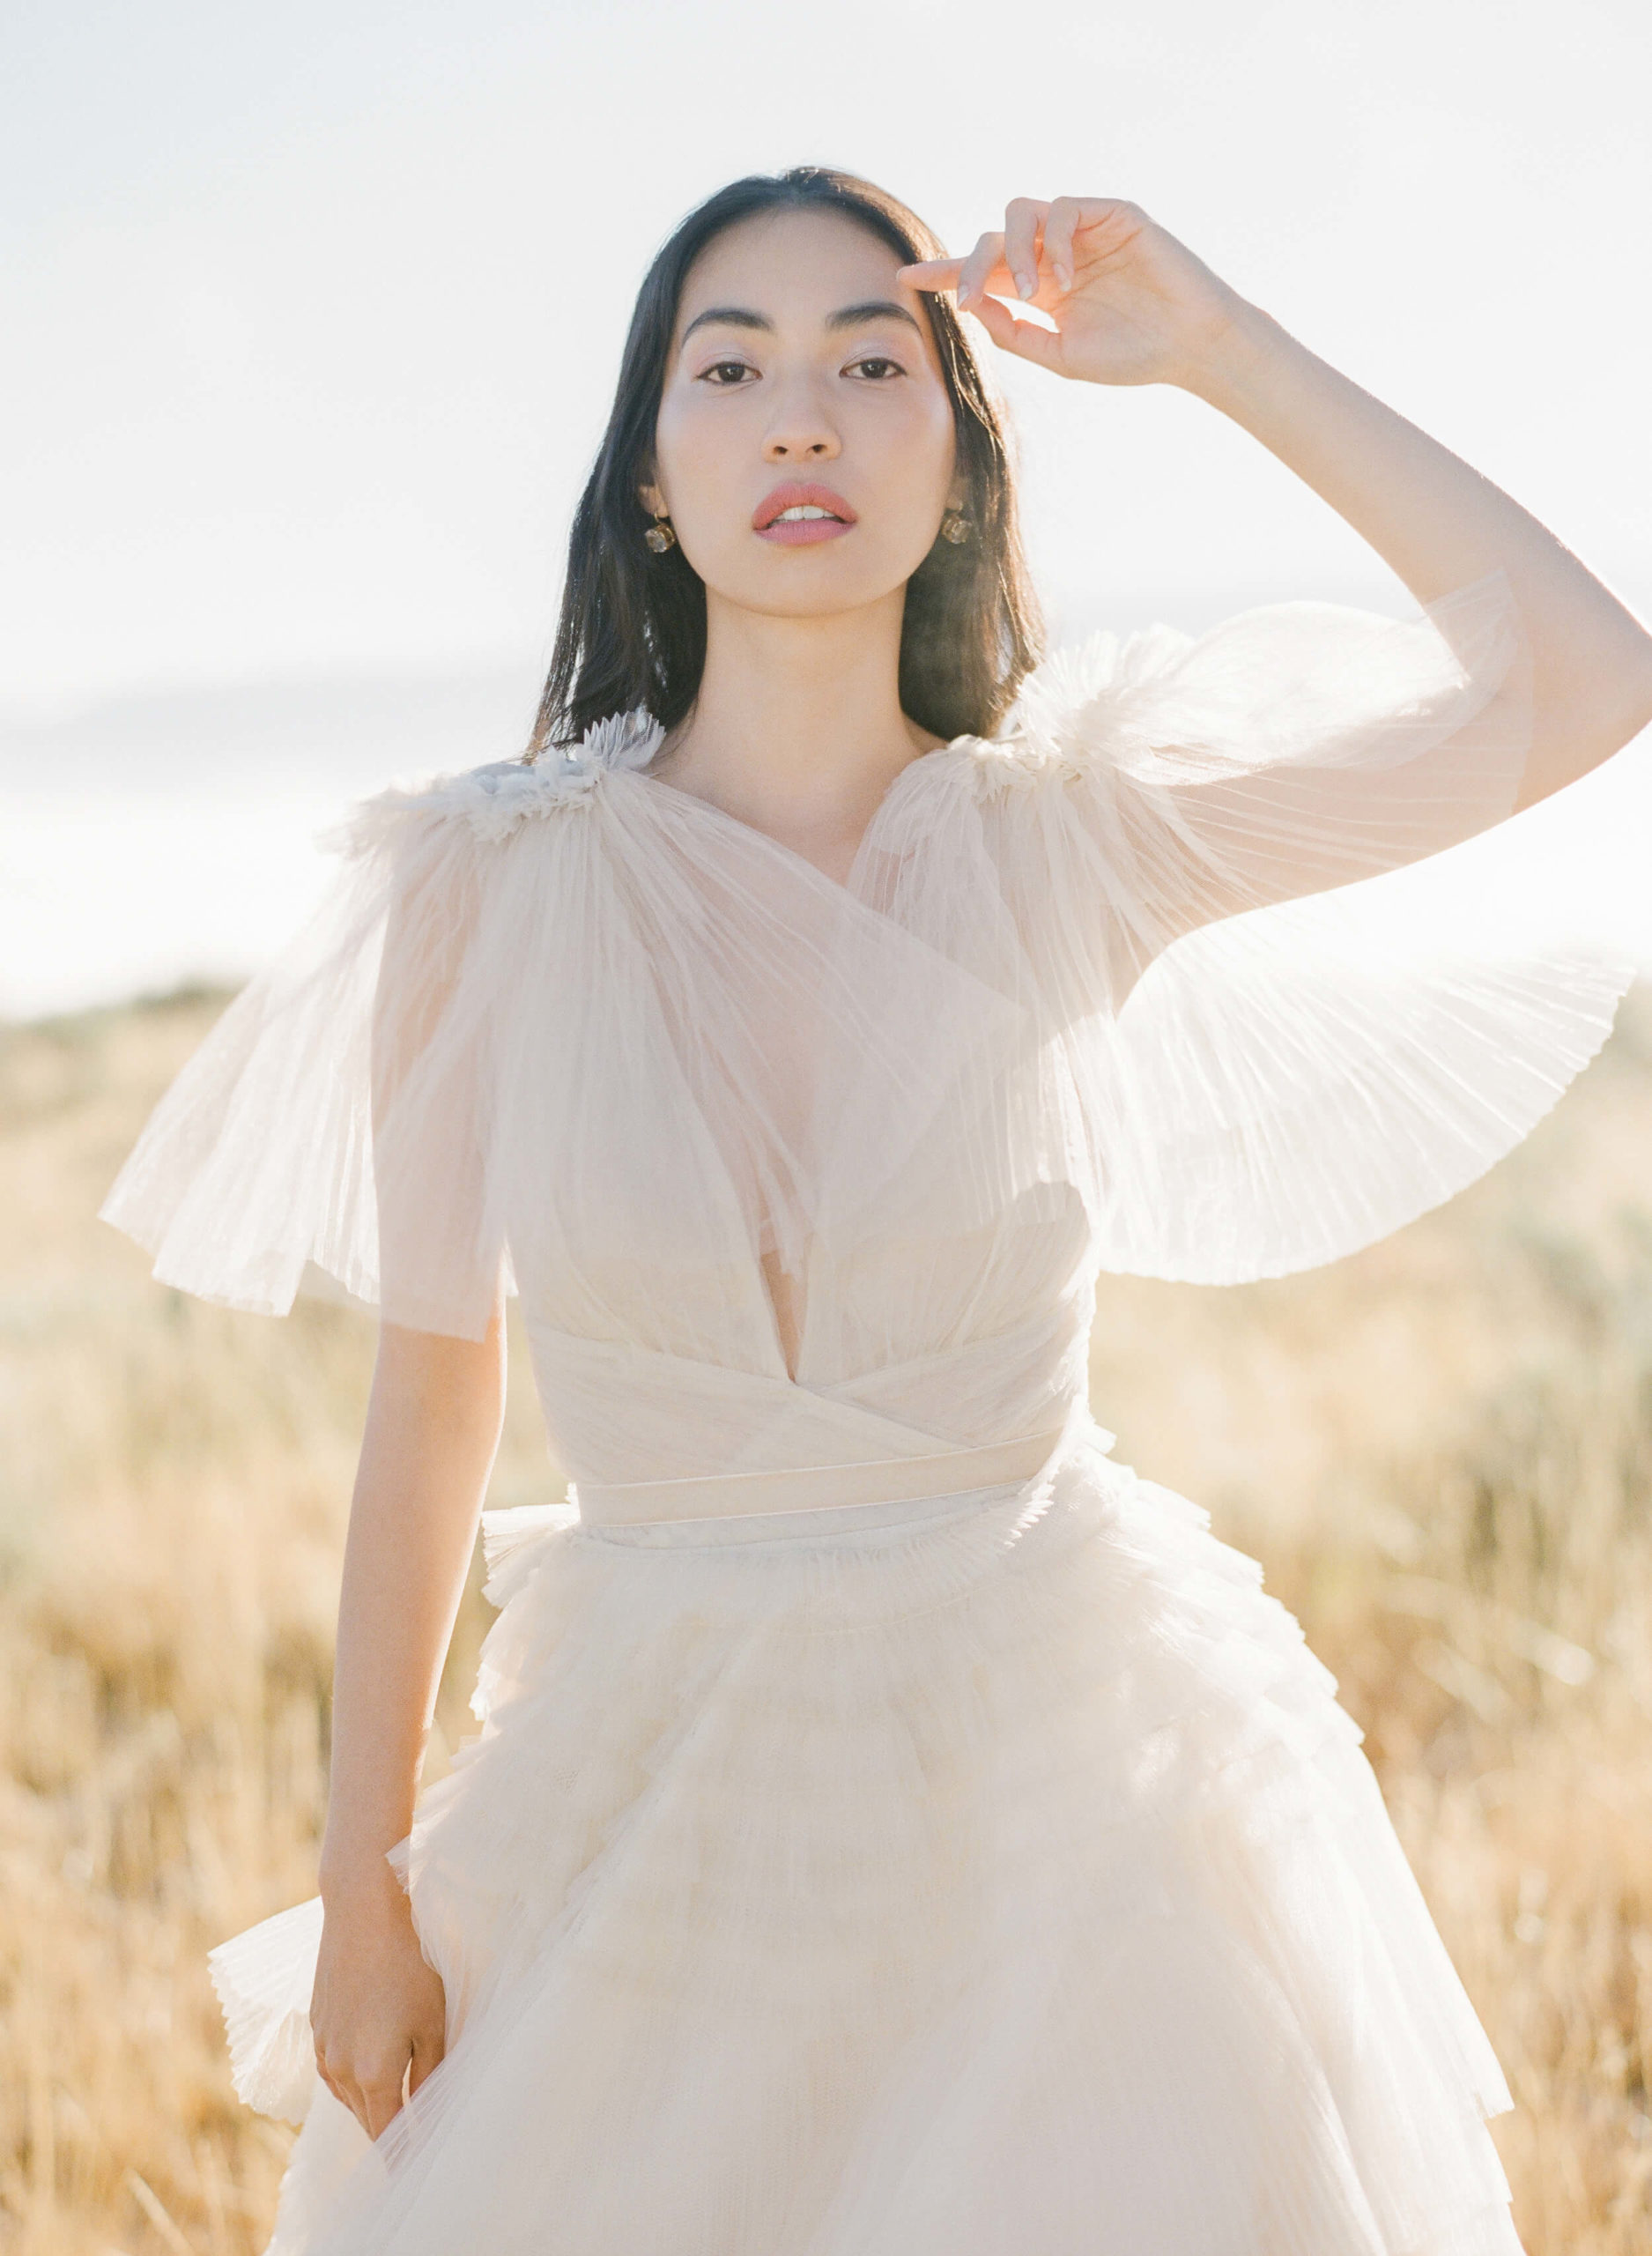 Creamy Aria Gown by Teuta Matoshi